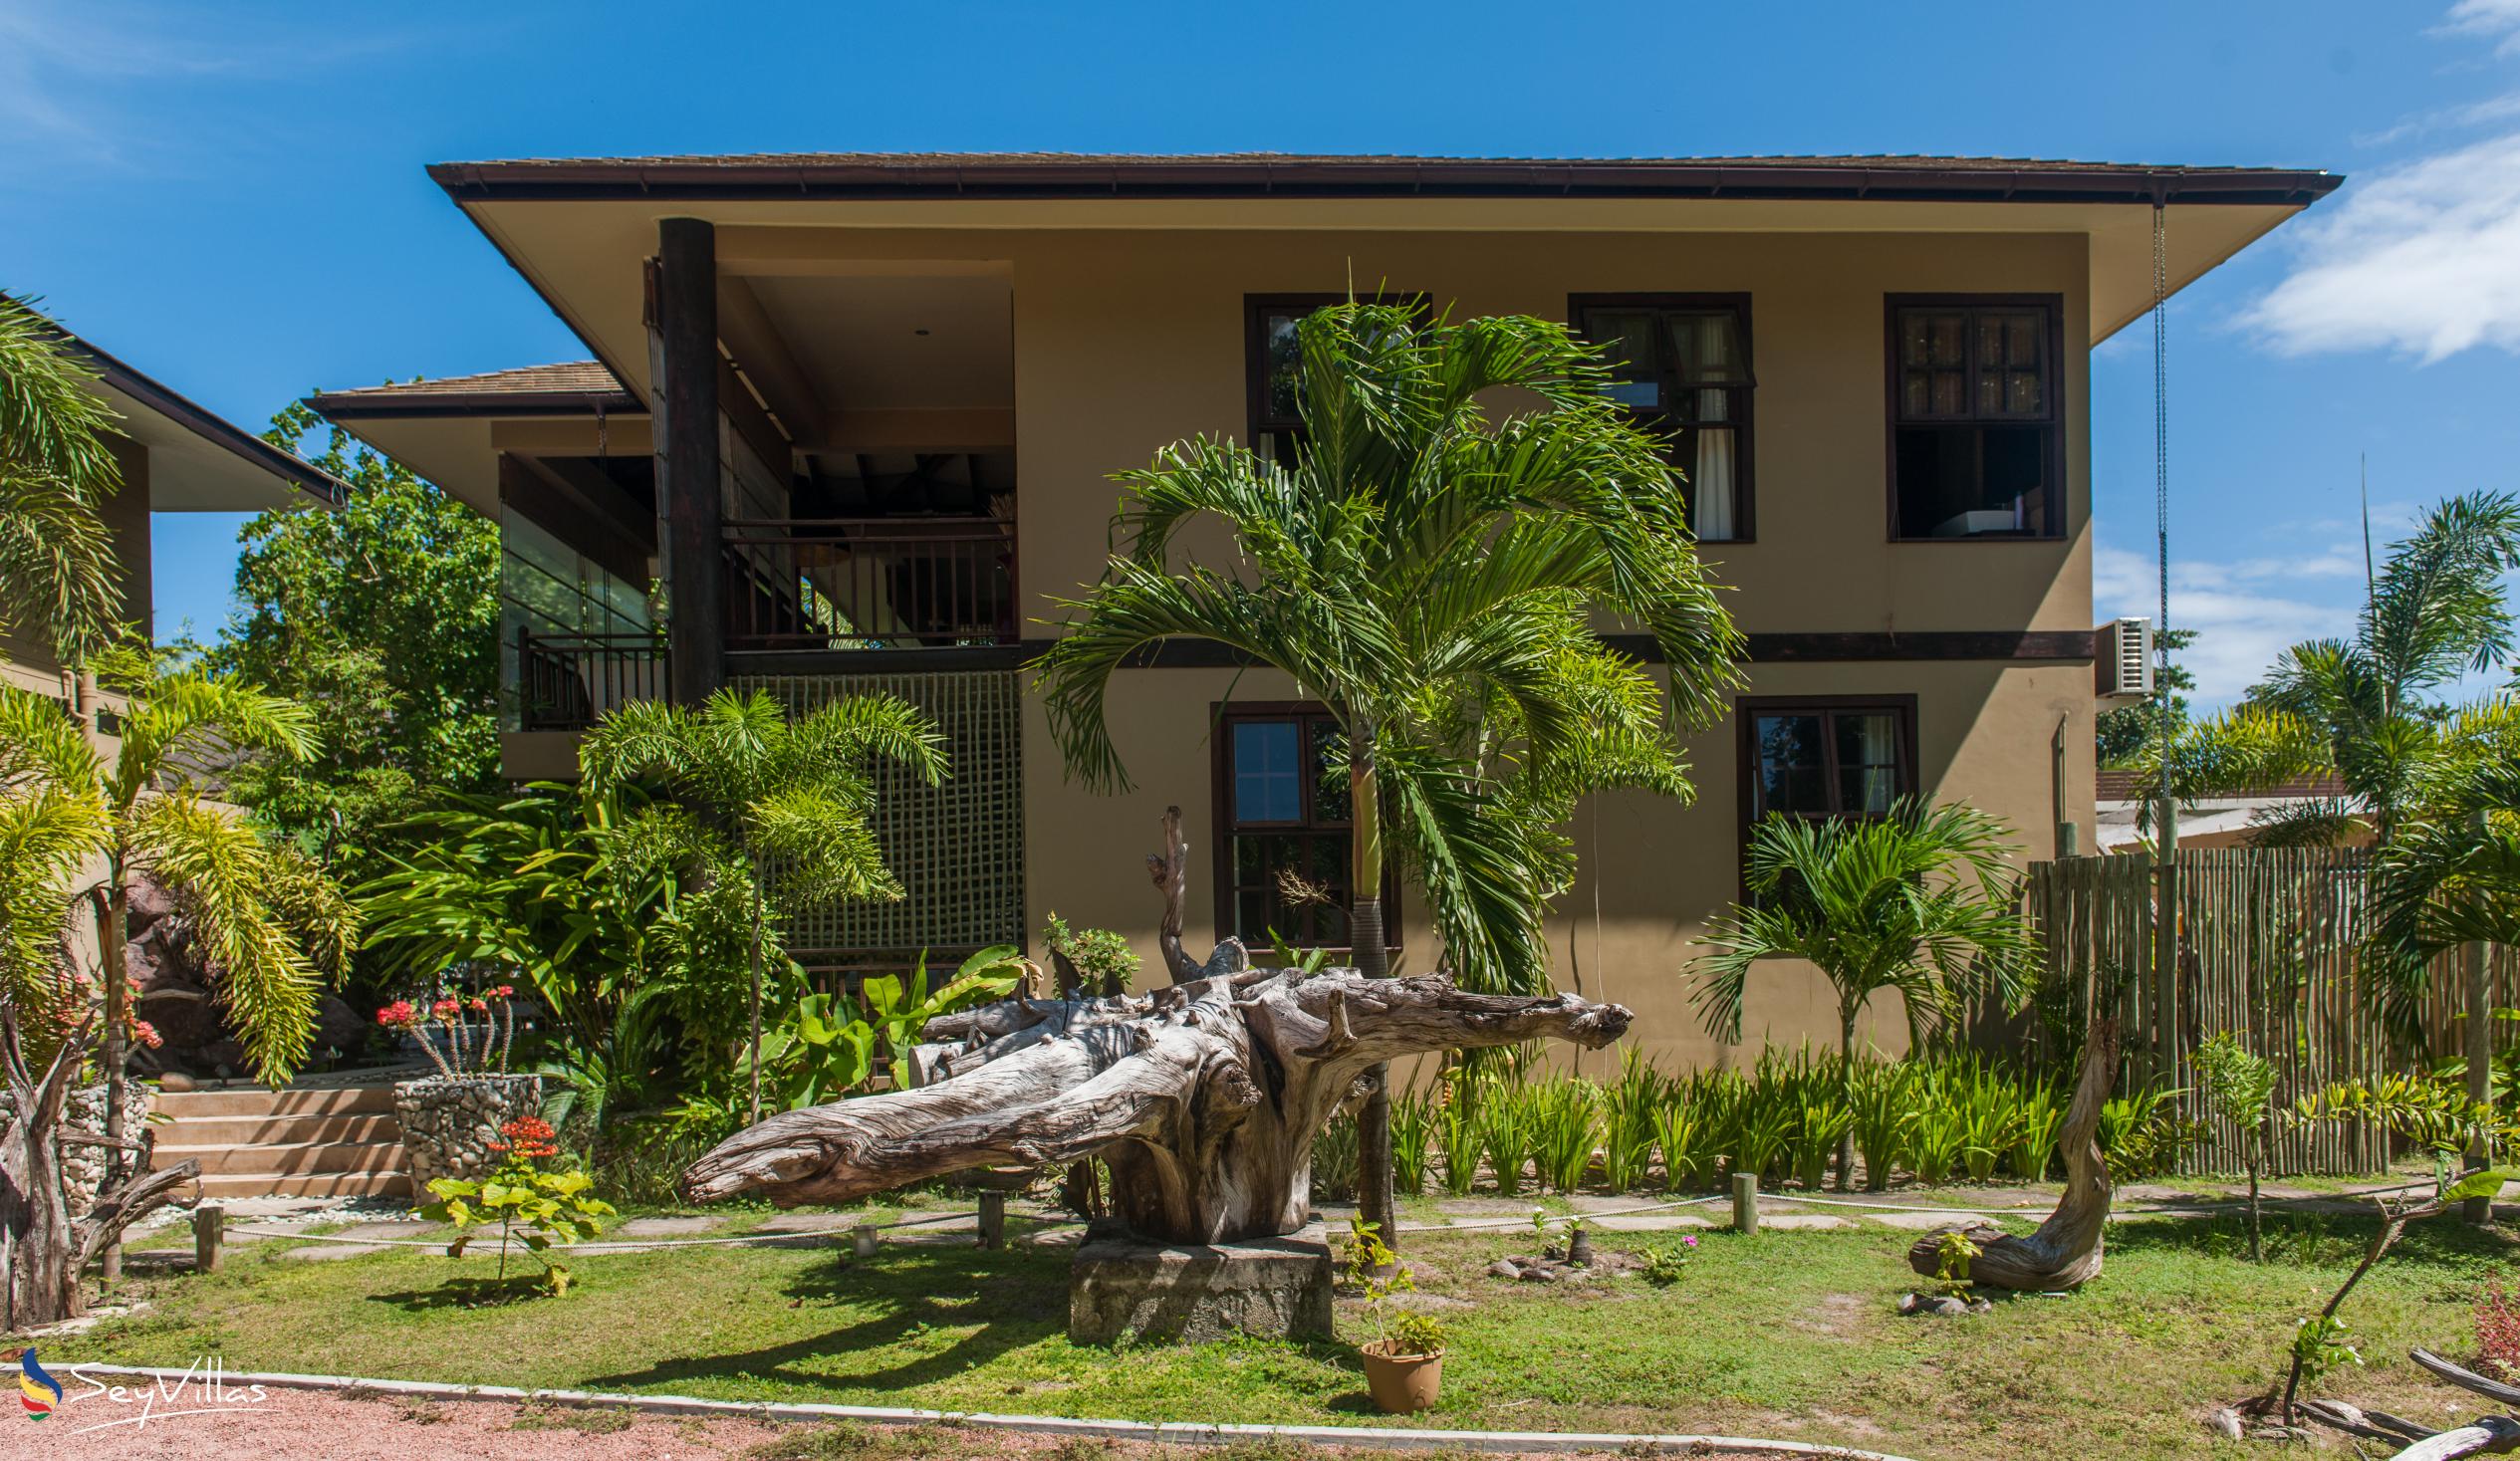 Foto 10: Villas des Alizes - Aussenbereich - Praslin (Seychellen)